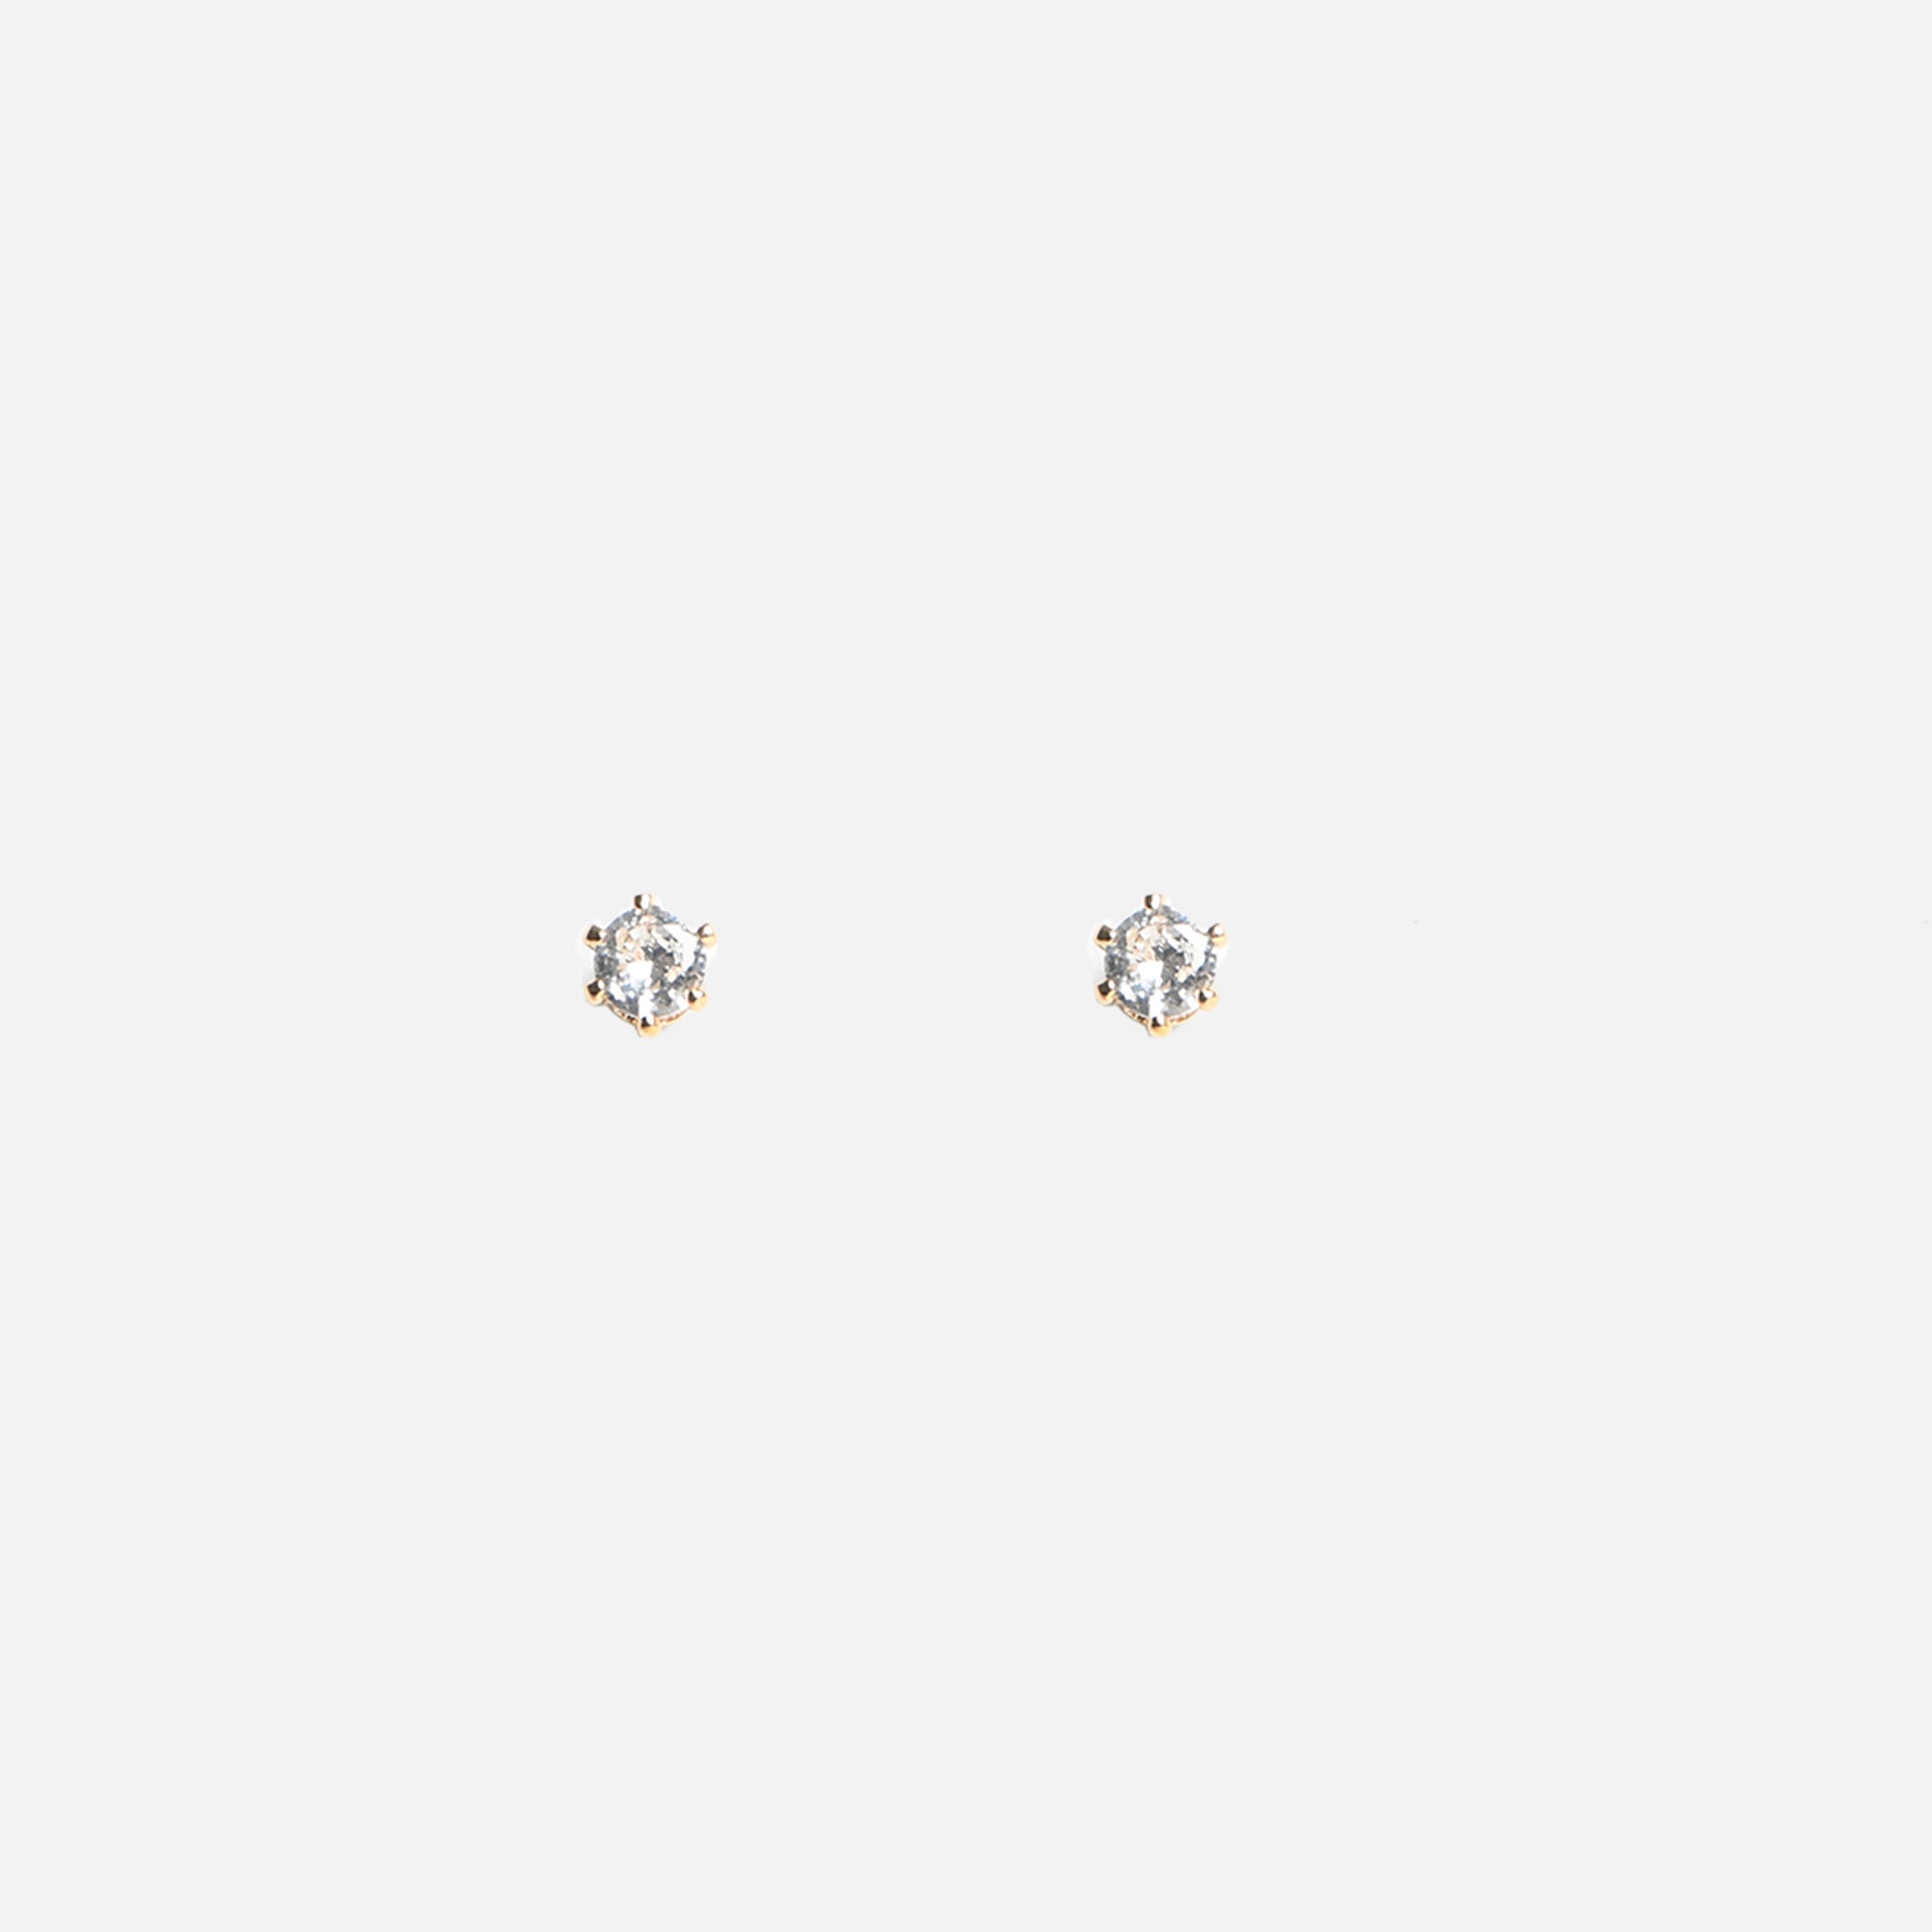 Duo de boucles d'oreilles dorées fixes et anneaux